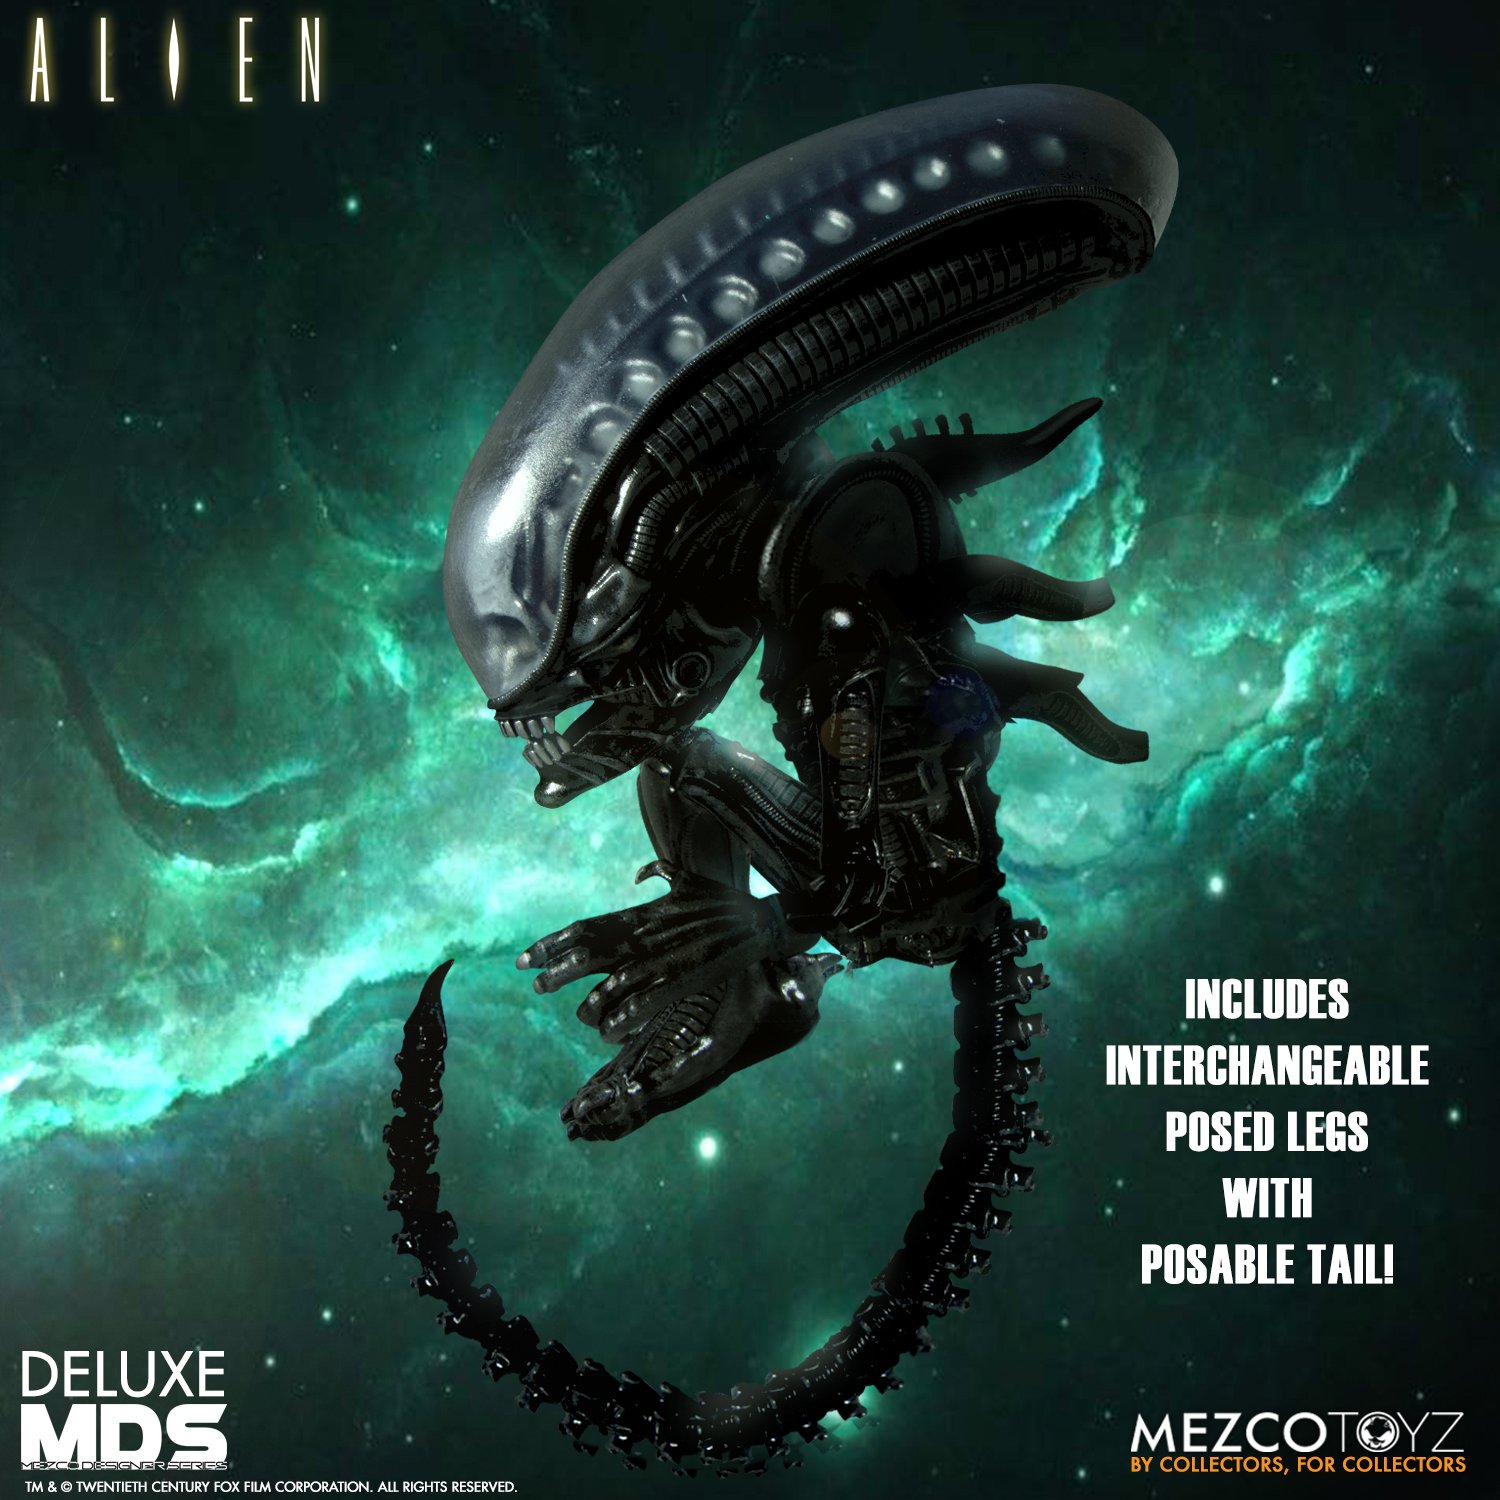 Mezco Alien Deluxe Designer Series MDS Figure